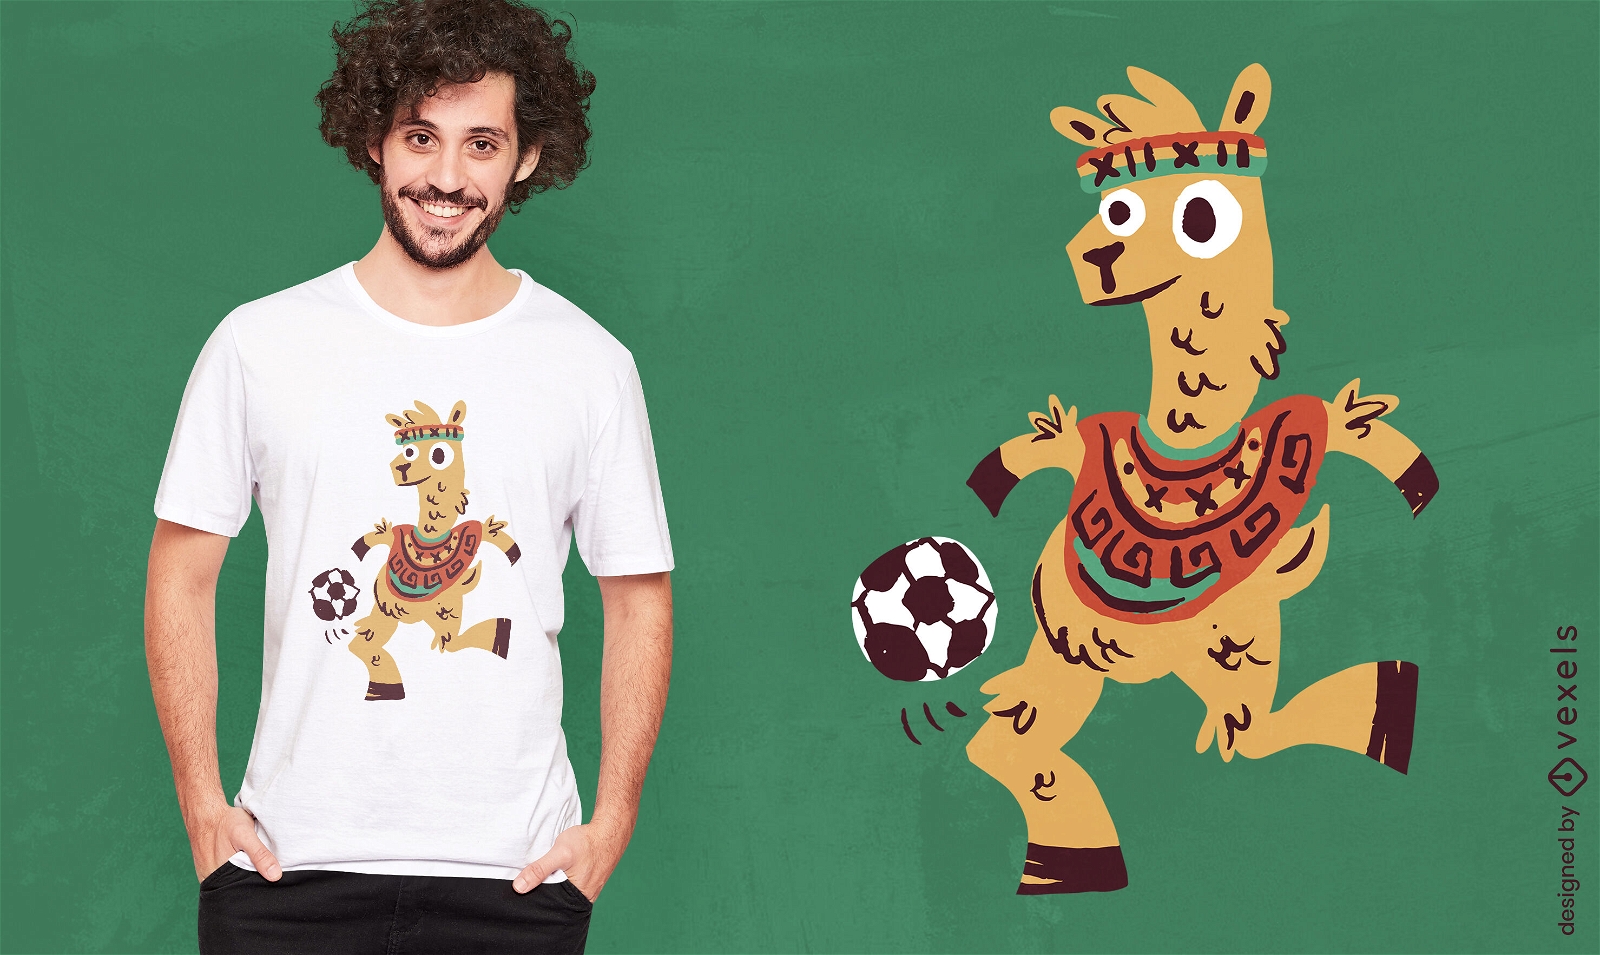 Peruvian soccer llama cartoon t-shirt design